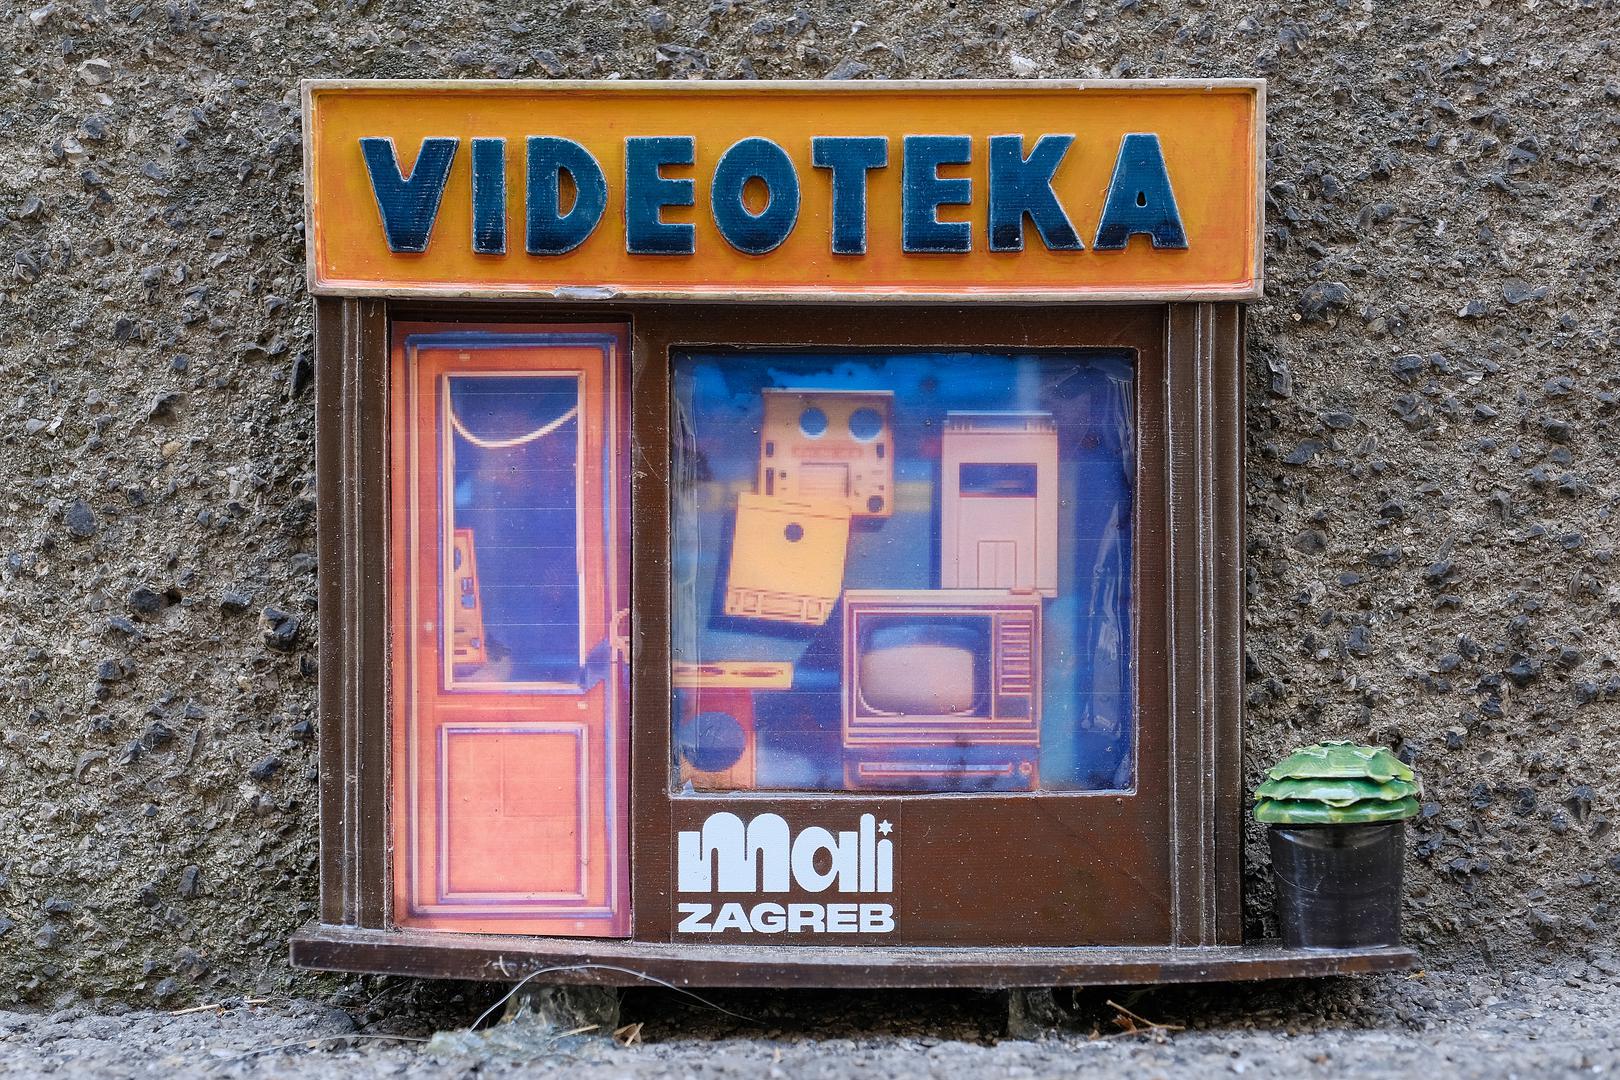 Kako su nekada izgledali izlozi zagrebačkih prodavaonica i obrta, poput foto ateljea, videoteka, ribarnica, urara... podsjetit će vas minijature koje ovih dana privlače poglede brojnih prolaznika.

